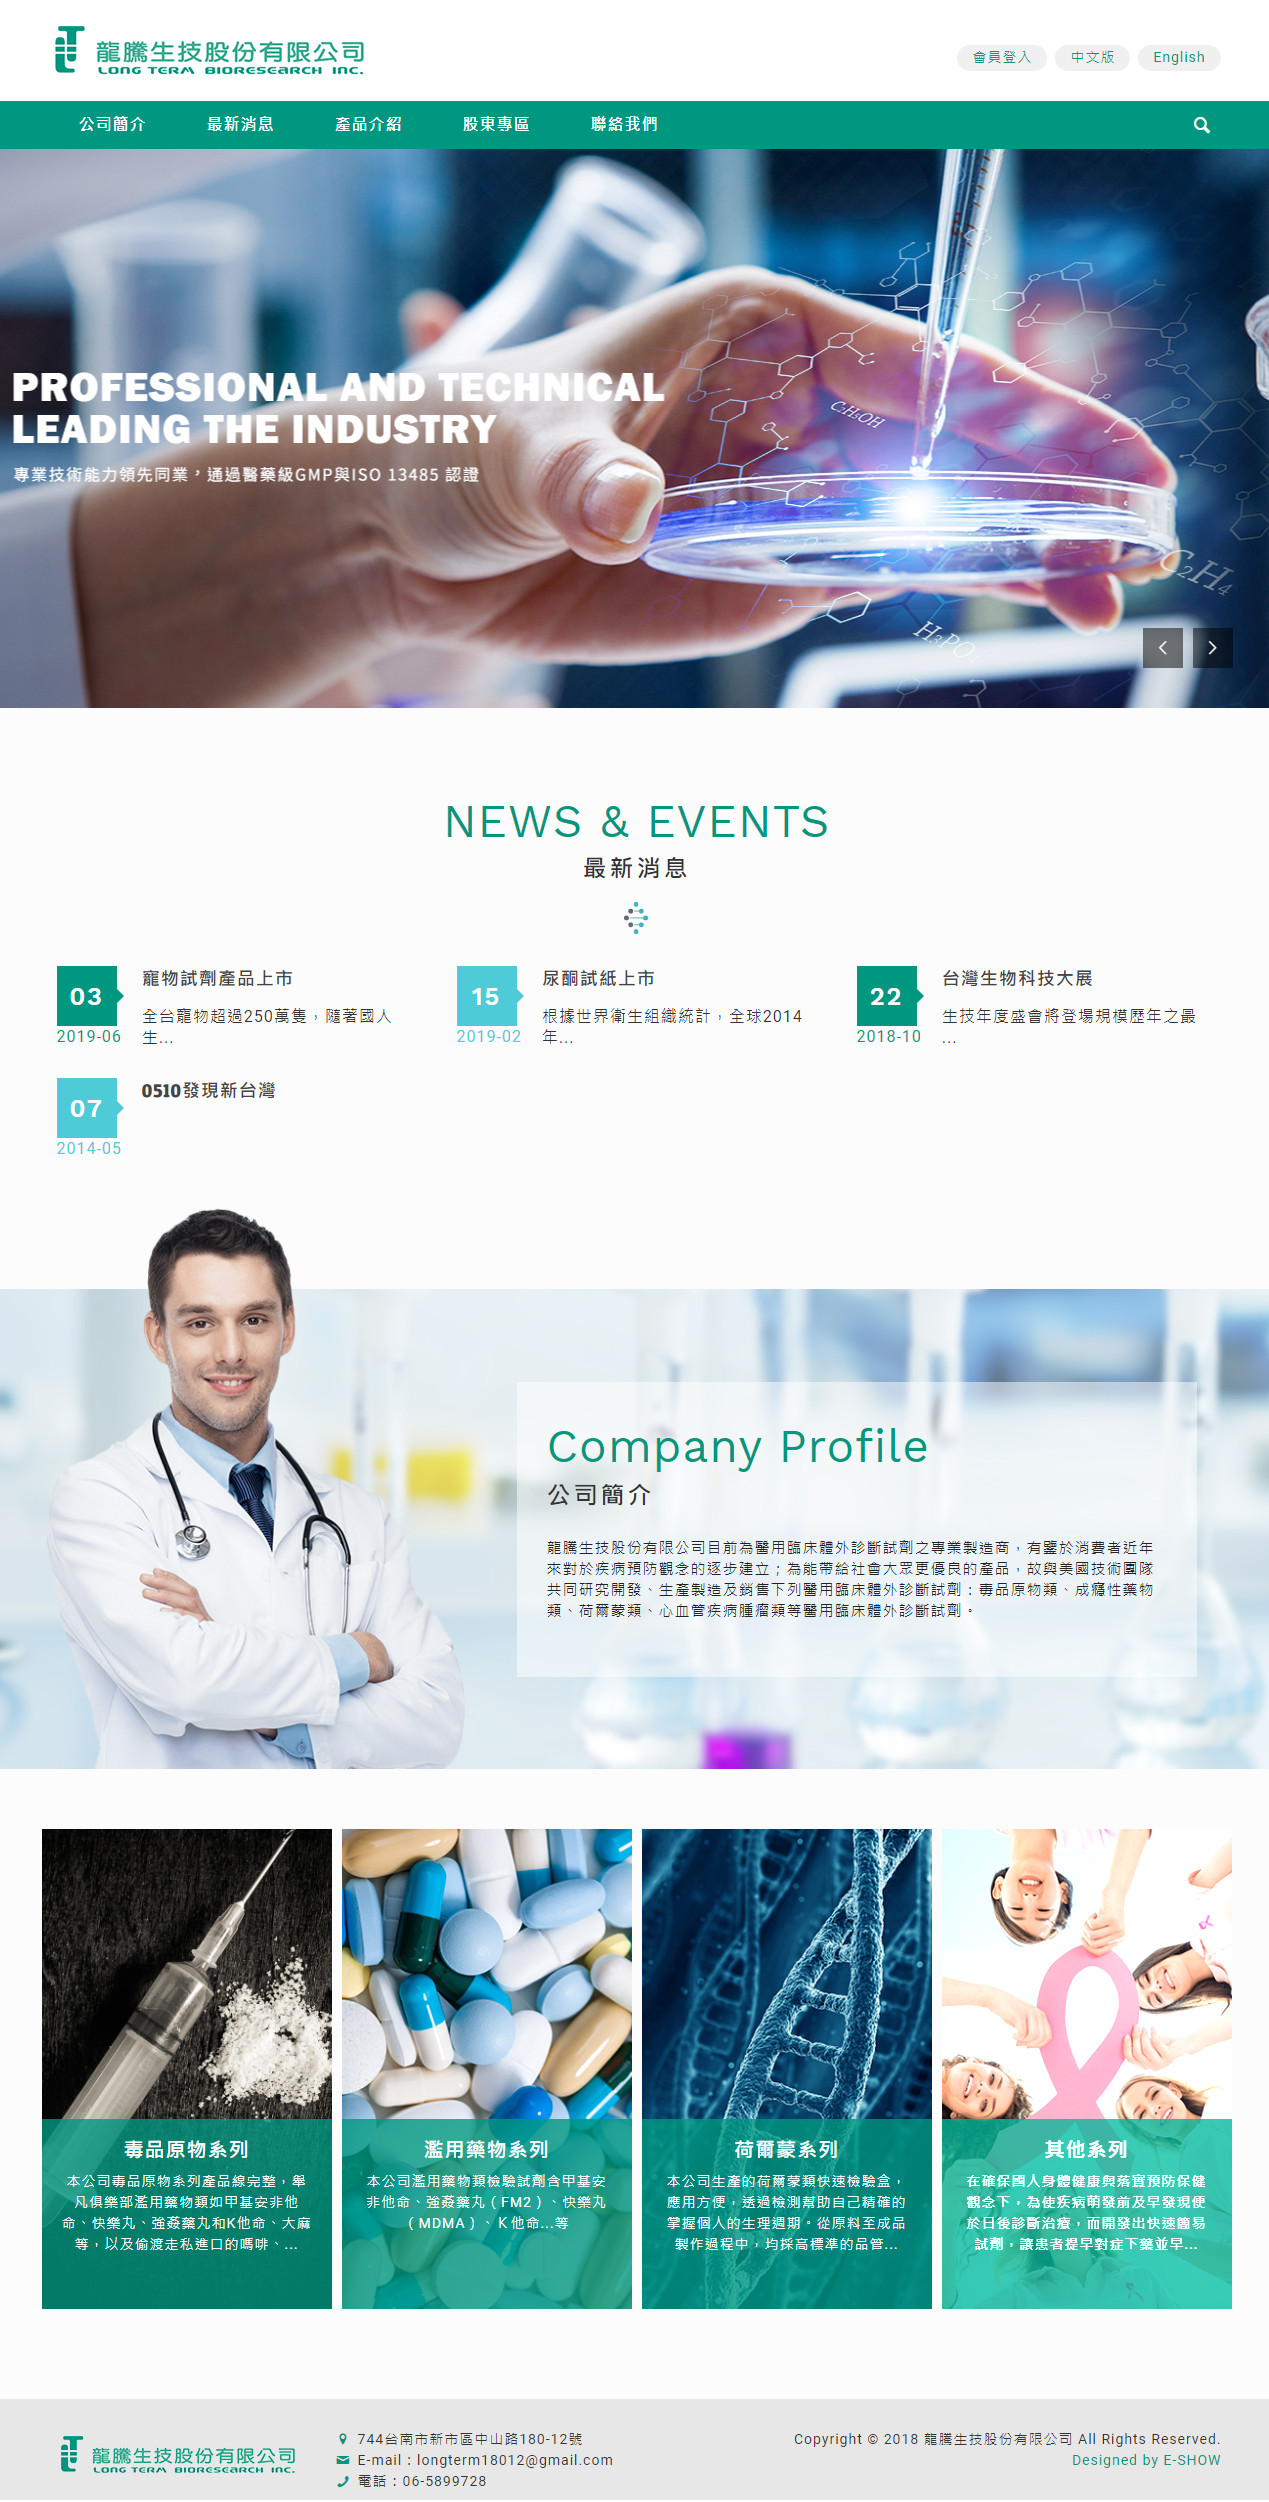 龍騰生技股份有限公司 RWD響應式網頁設計
網站設計